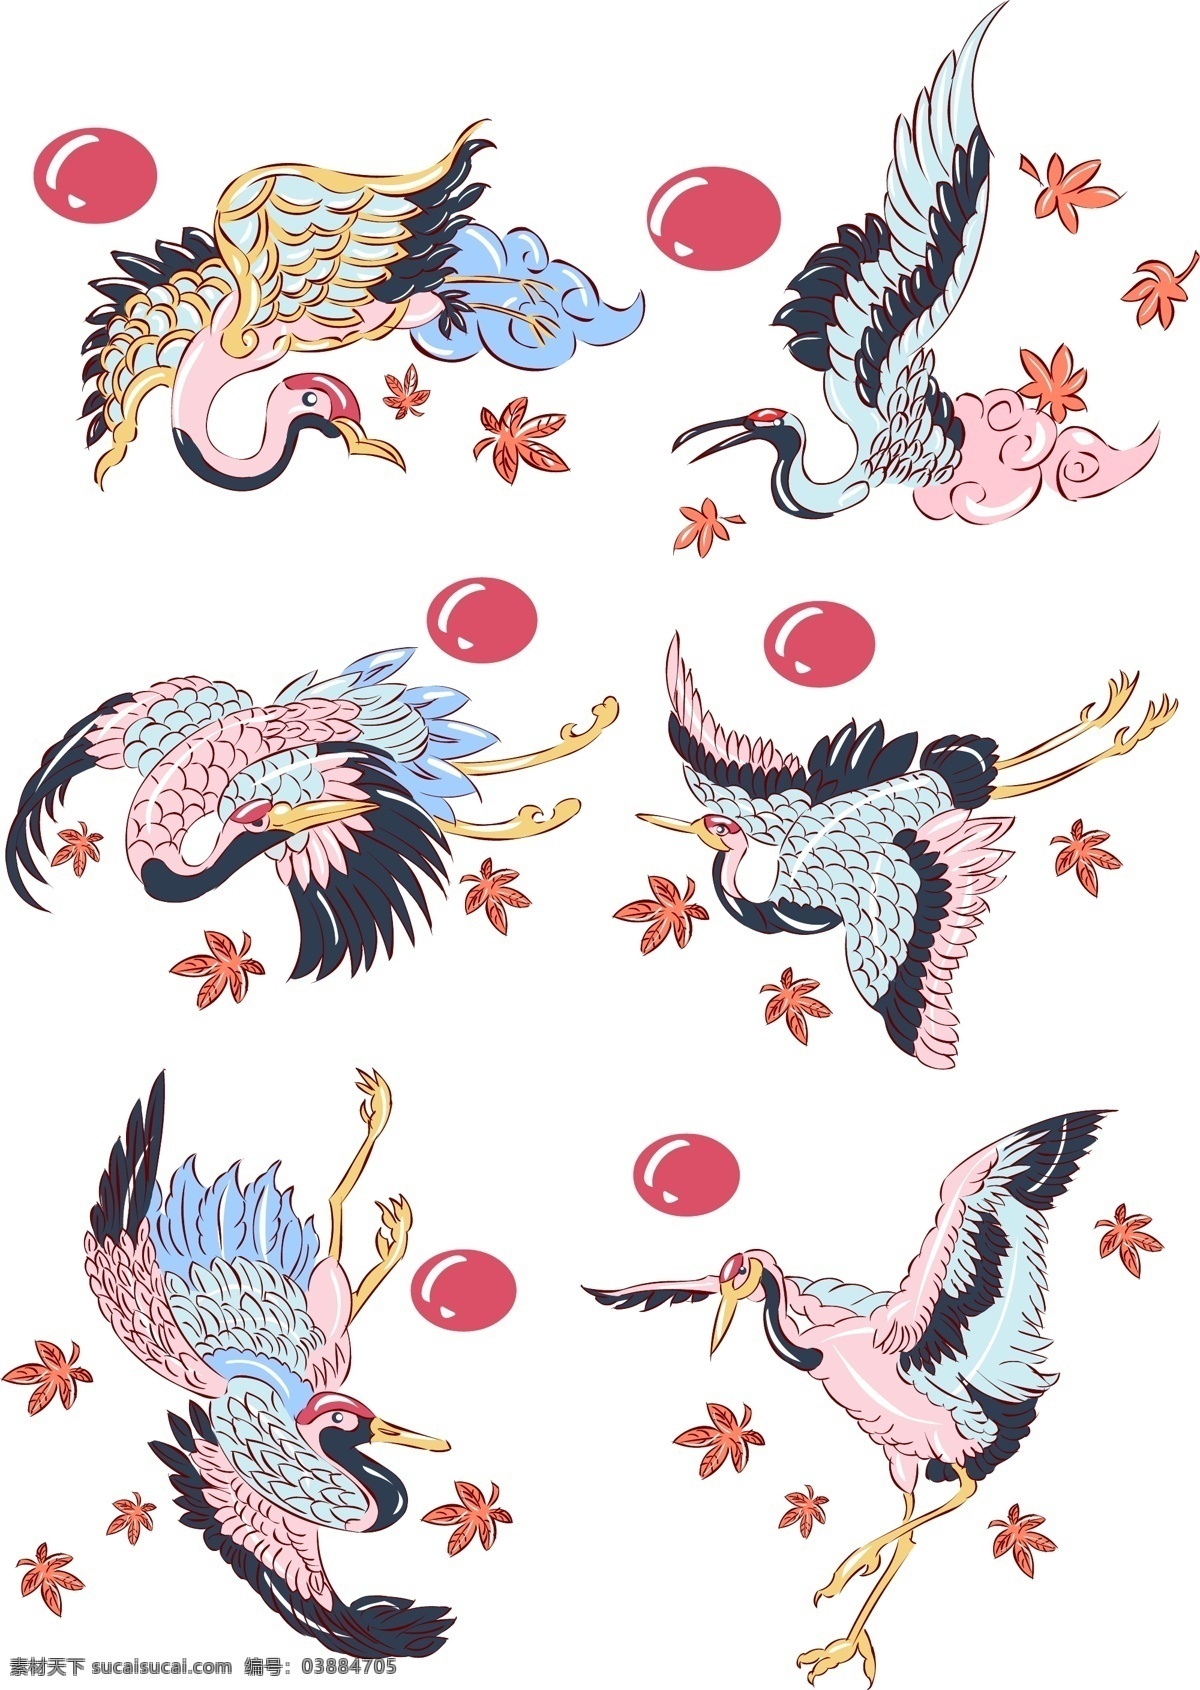 手绘 动物 中国 风 仙鹤 中国风 古风 手绘仙鹤 简约风 水墨 水墨仙鹤